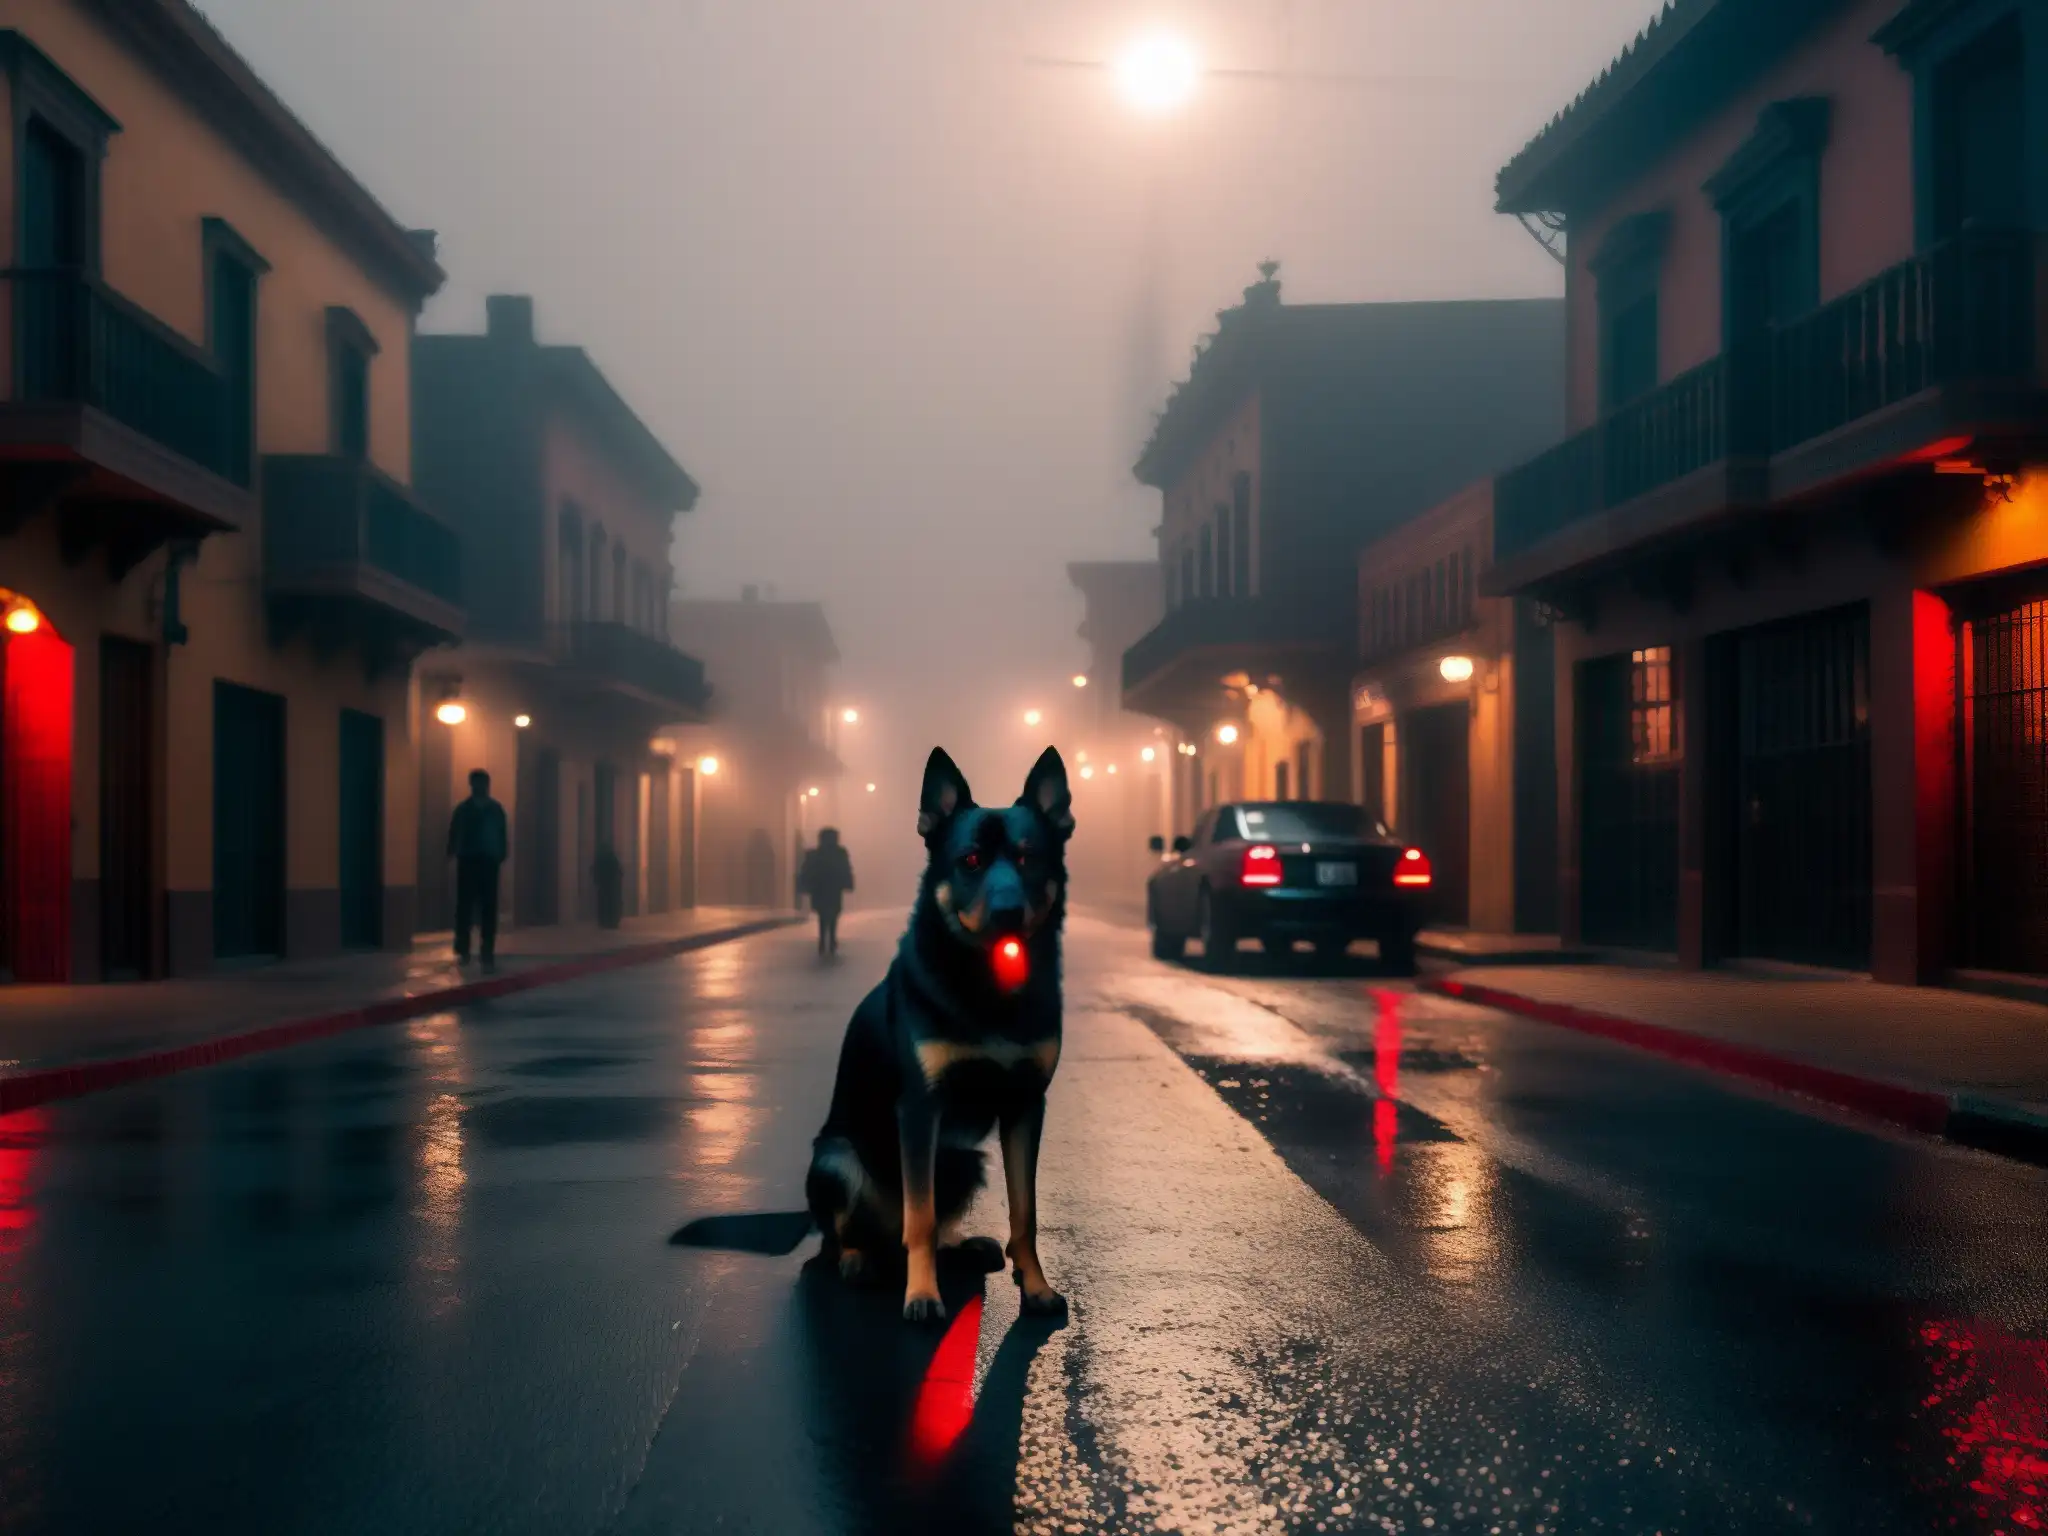 En la oscura calle de México de noche, un inquietante Cadejo protector presagia muerte en las noches, con ojos rojos